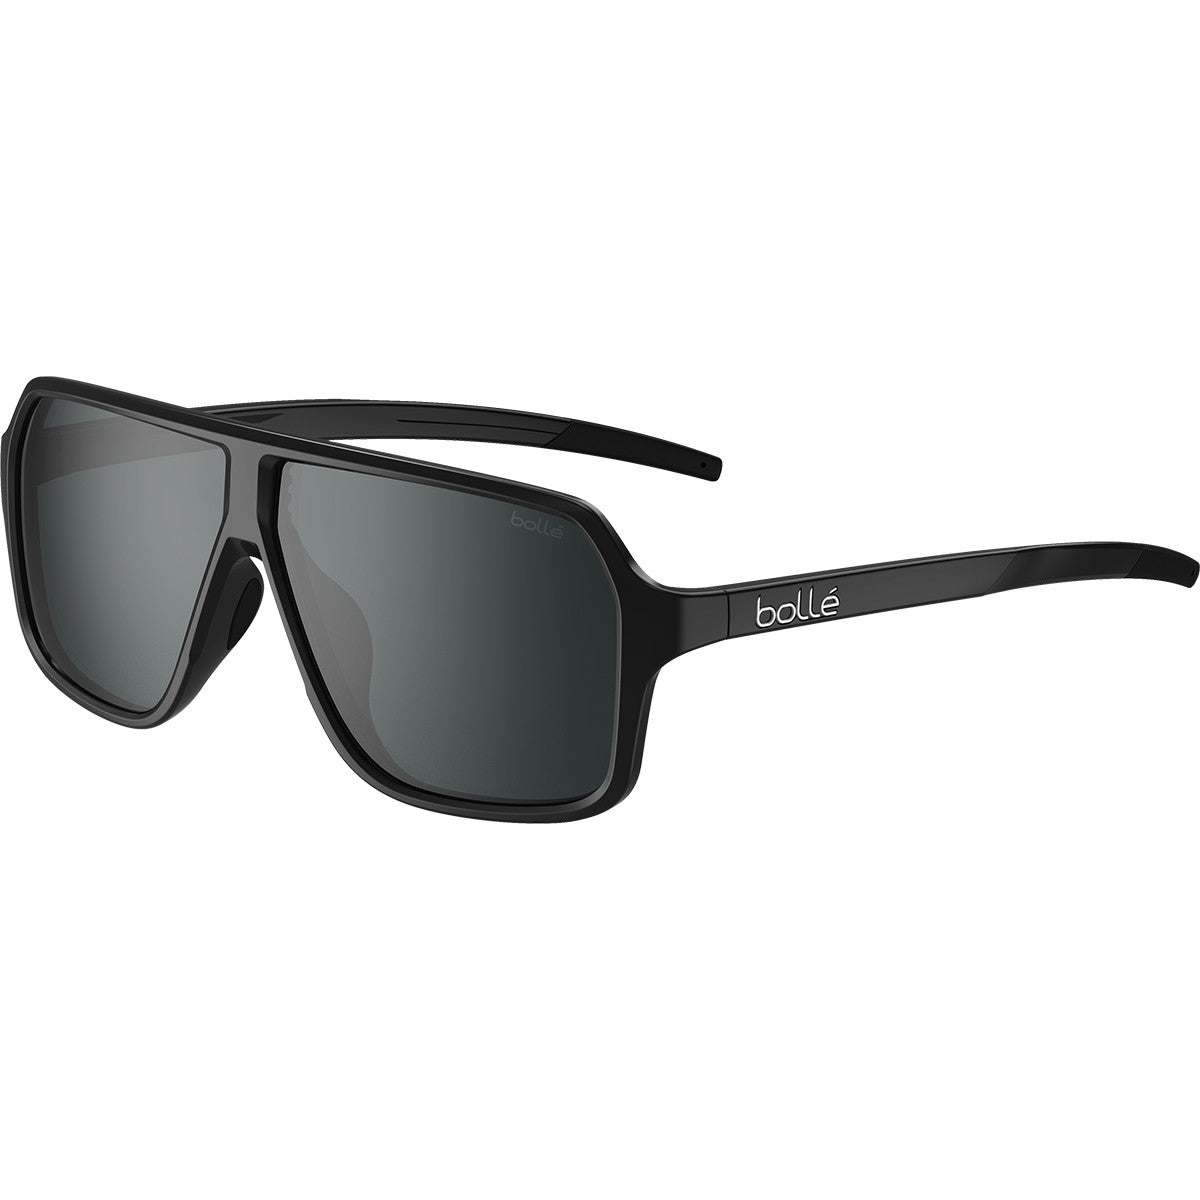 Bolle Prime Sunglasses, Black Shiny - TNS